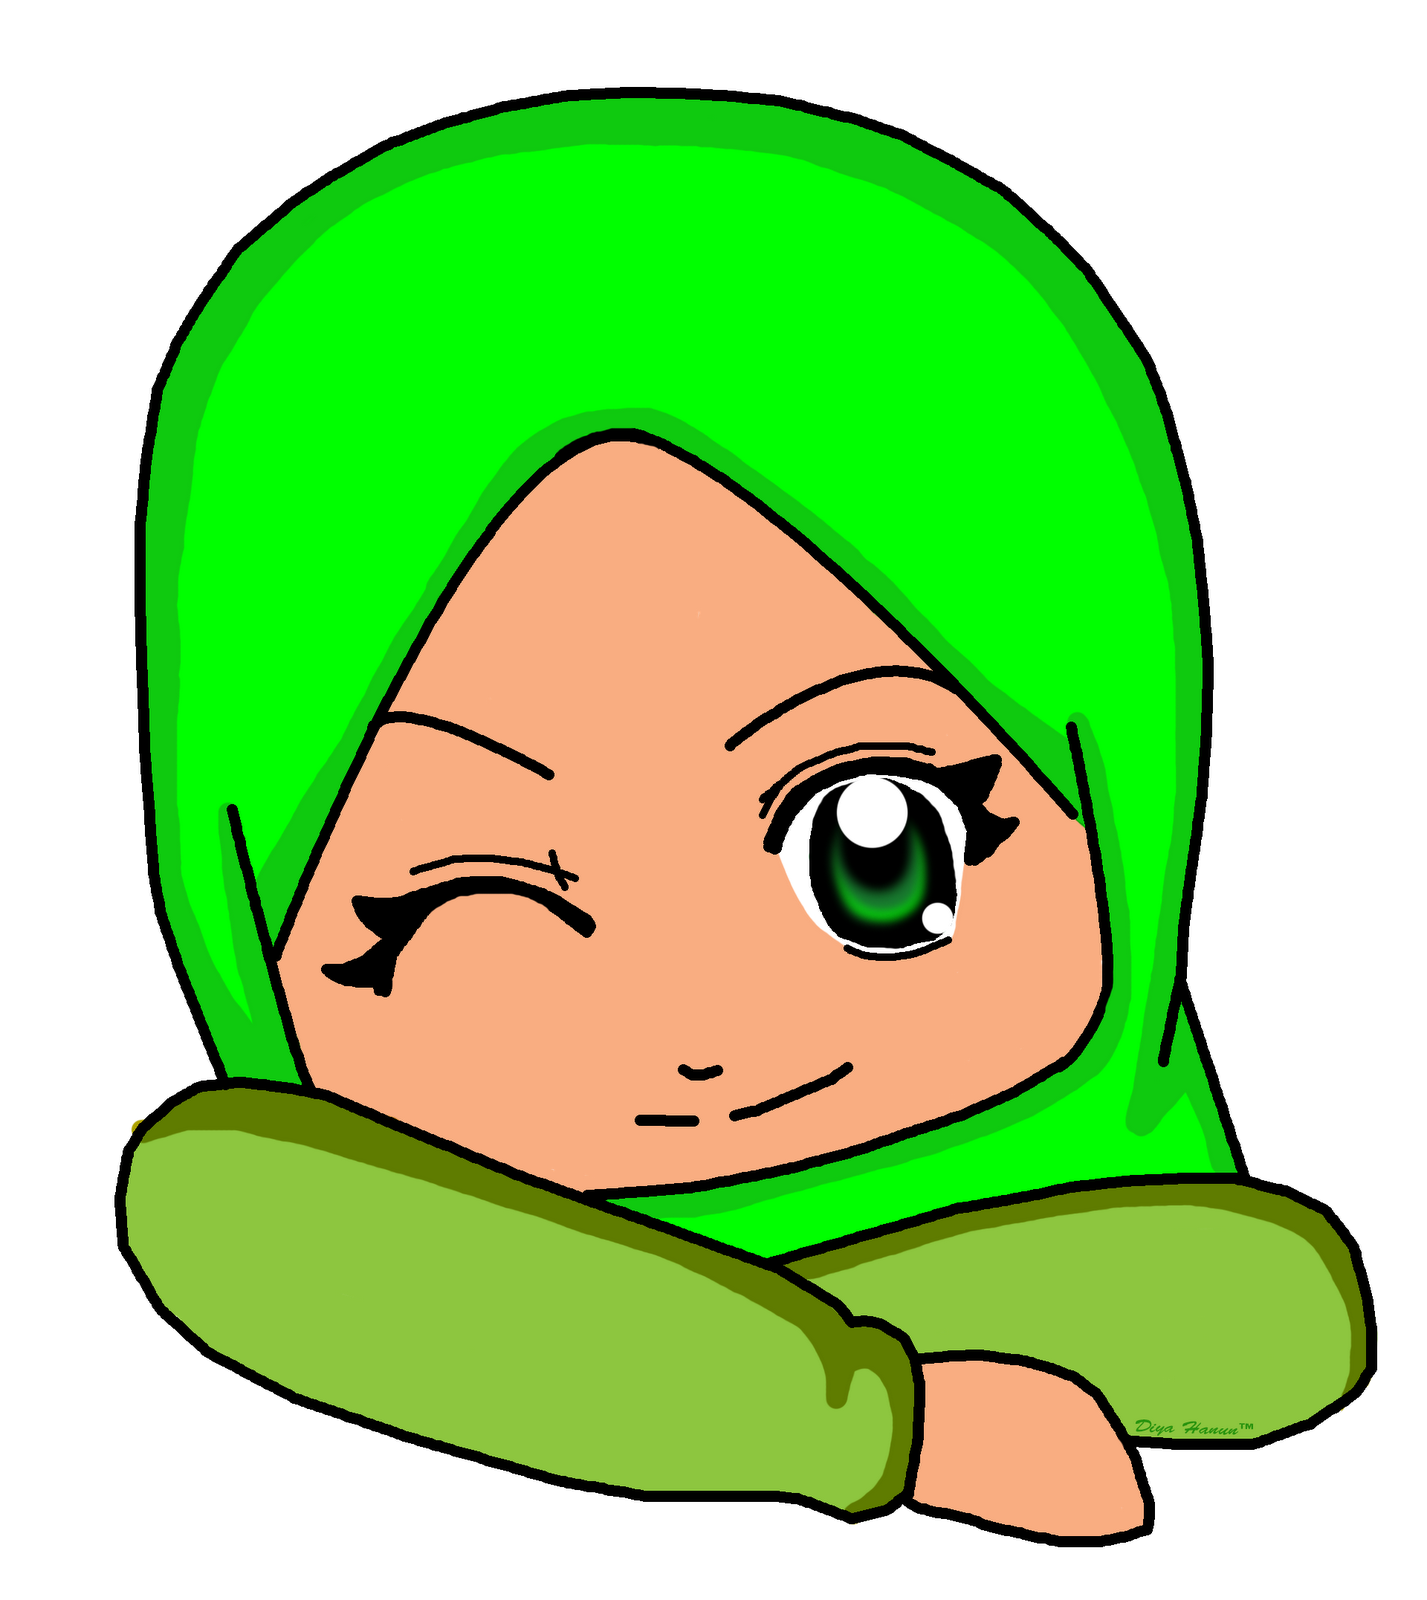 Gambar Kartun Anak Muslim Png Top Gambar